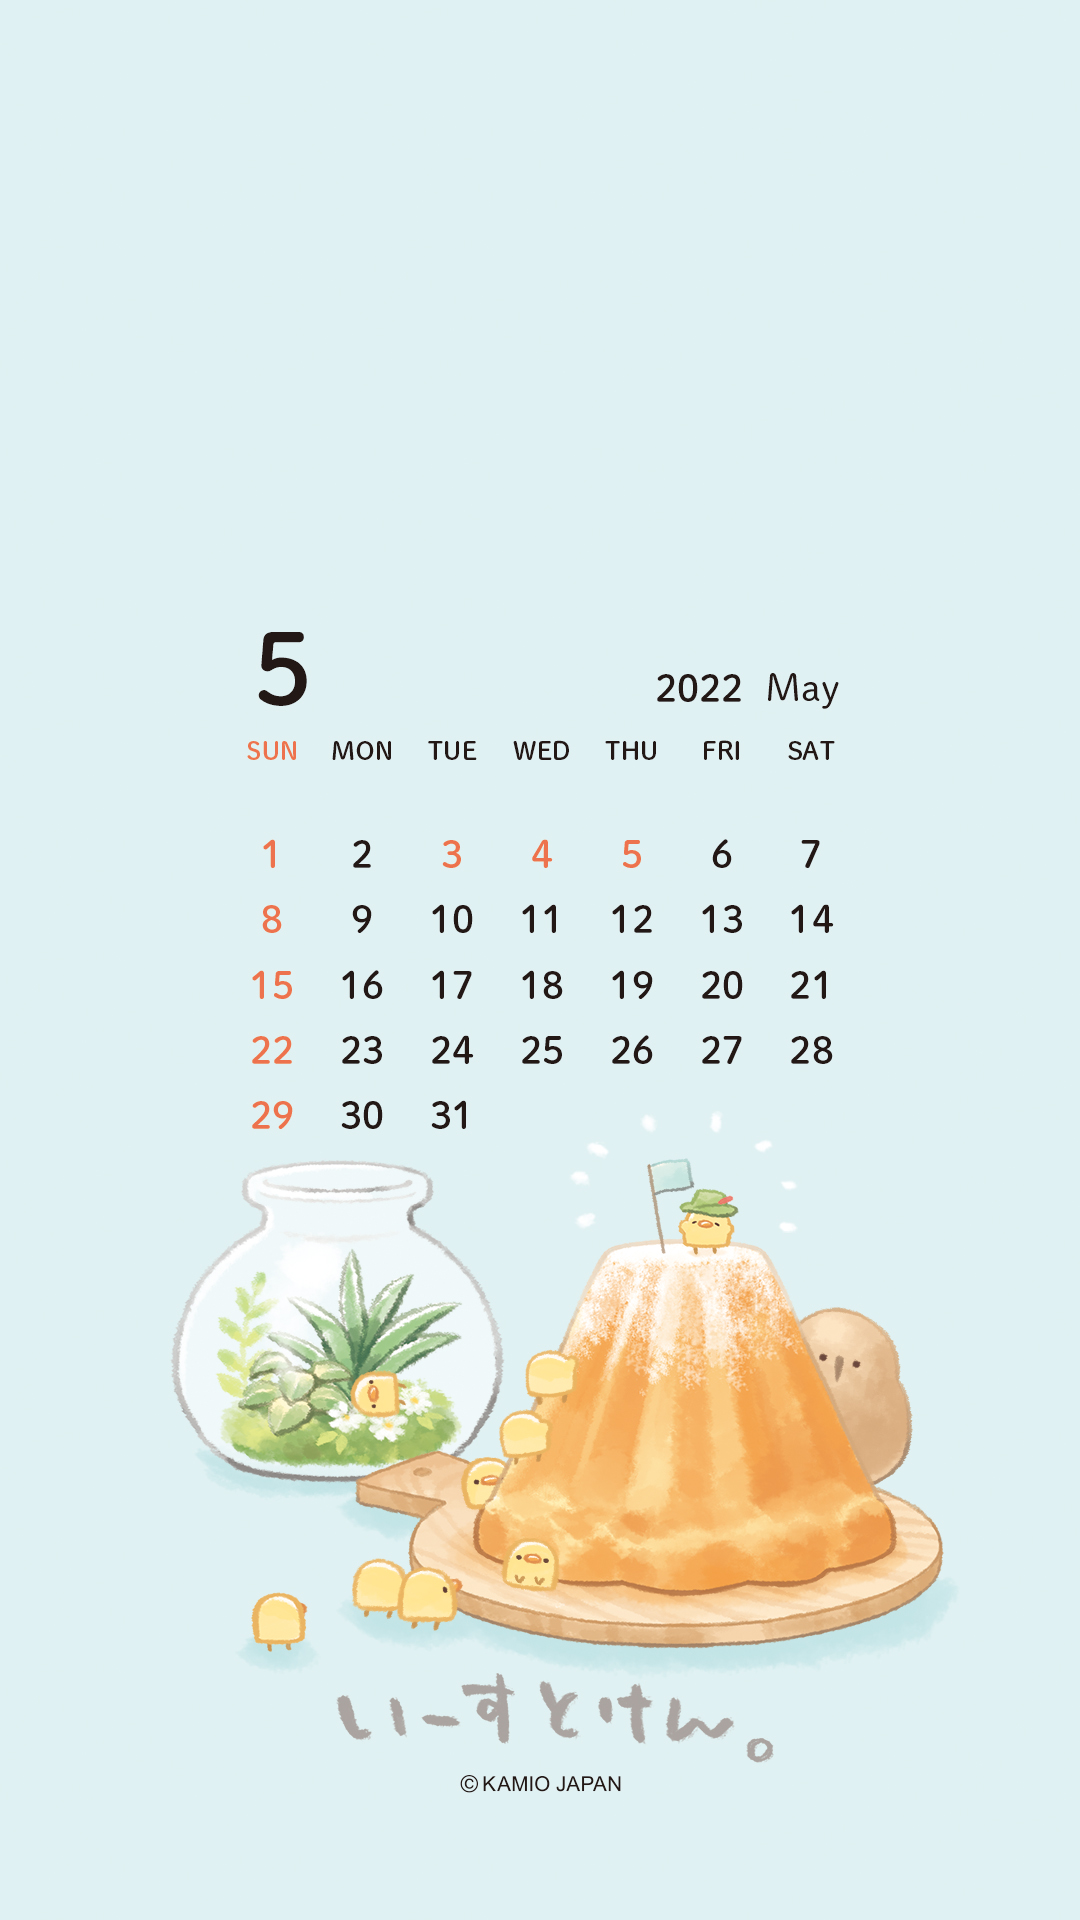 いーすとけん ᴥ 情報 公式 スマホ壁紙calendar 配布 明日から使える5月カレンダーをプレゼント ５月はピヨコーンたちの爽やかなデザインです T Co Ee0oj5muny Twitter